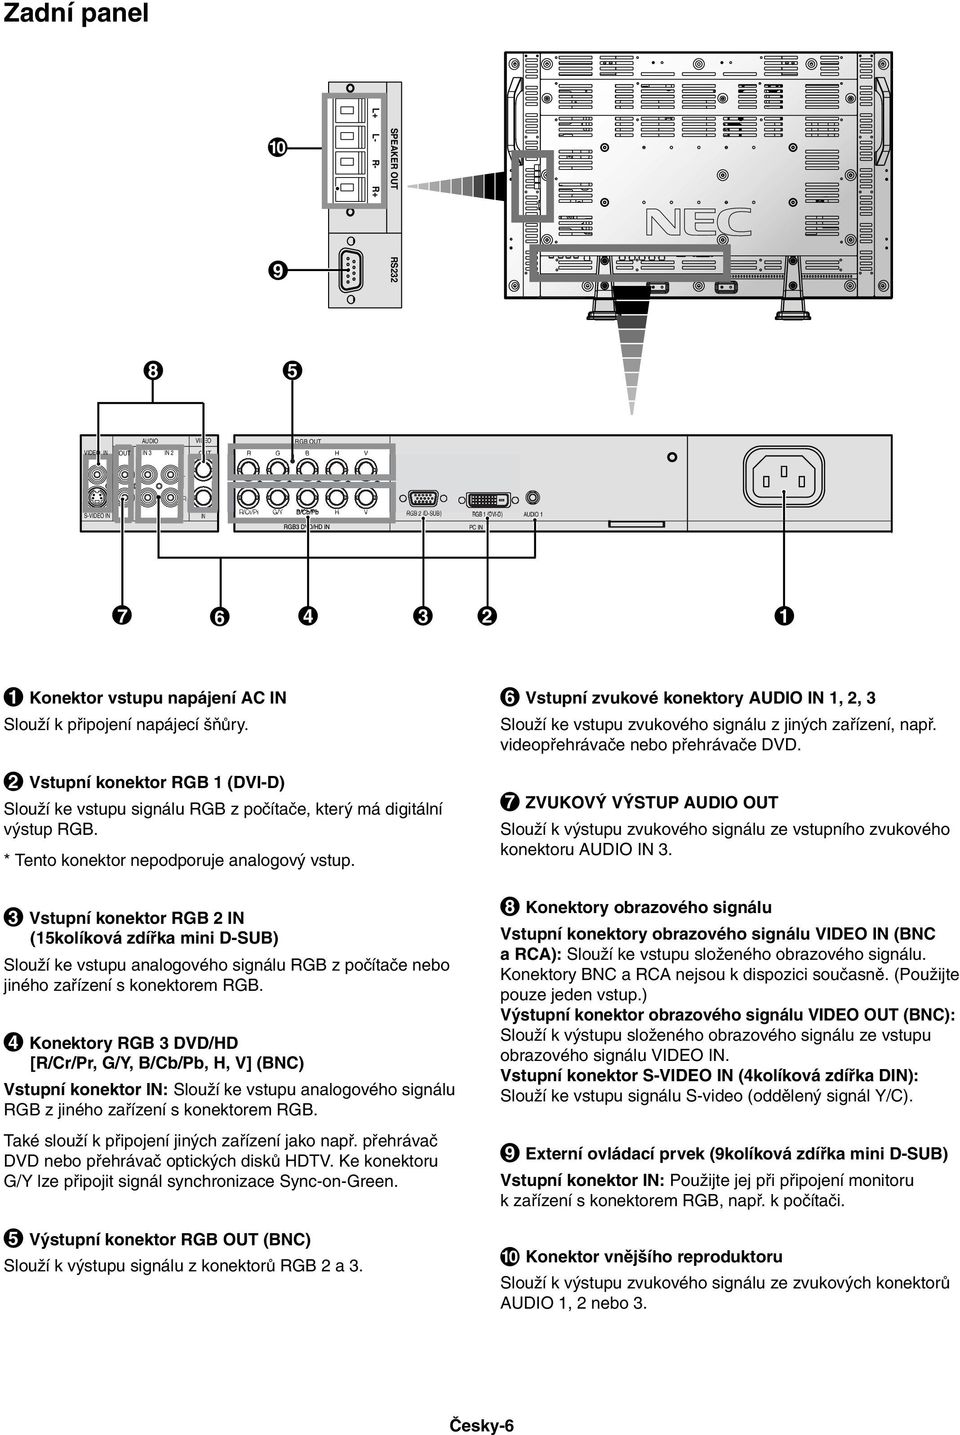 * Tento konektor nepodporuje analogov vstup. 3 Vstupní konektor RGB 2 IN (15kolíková zdífika mini DSUB) SlouÏí ke vstupu analogového signálu RGB z poãítaãe nebo jiného zafiízení s konektorem RGB.